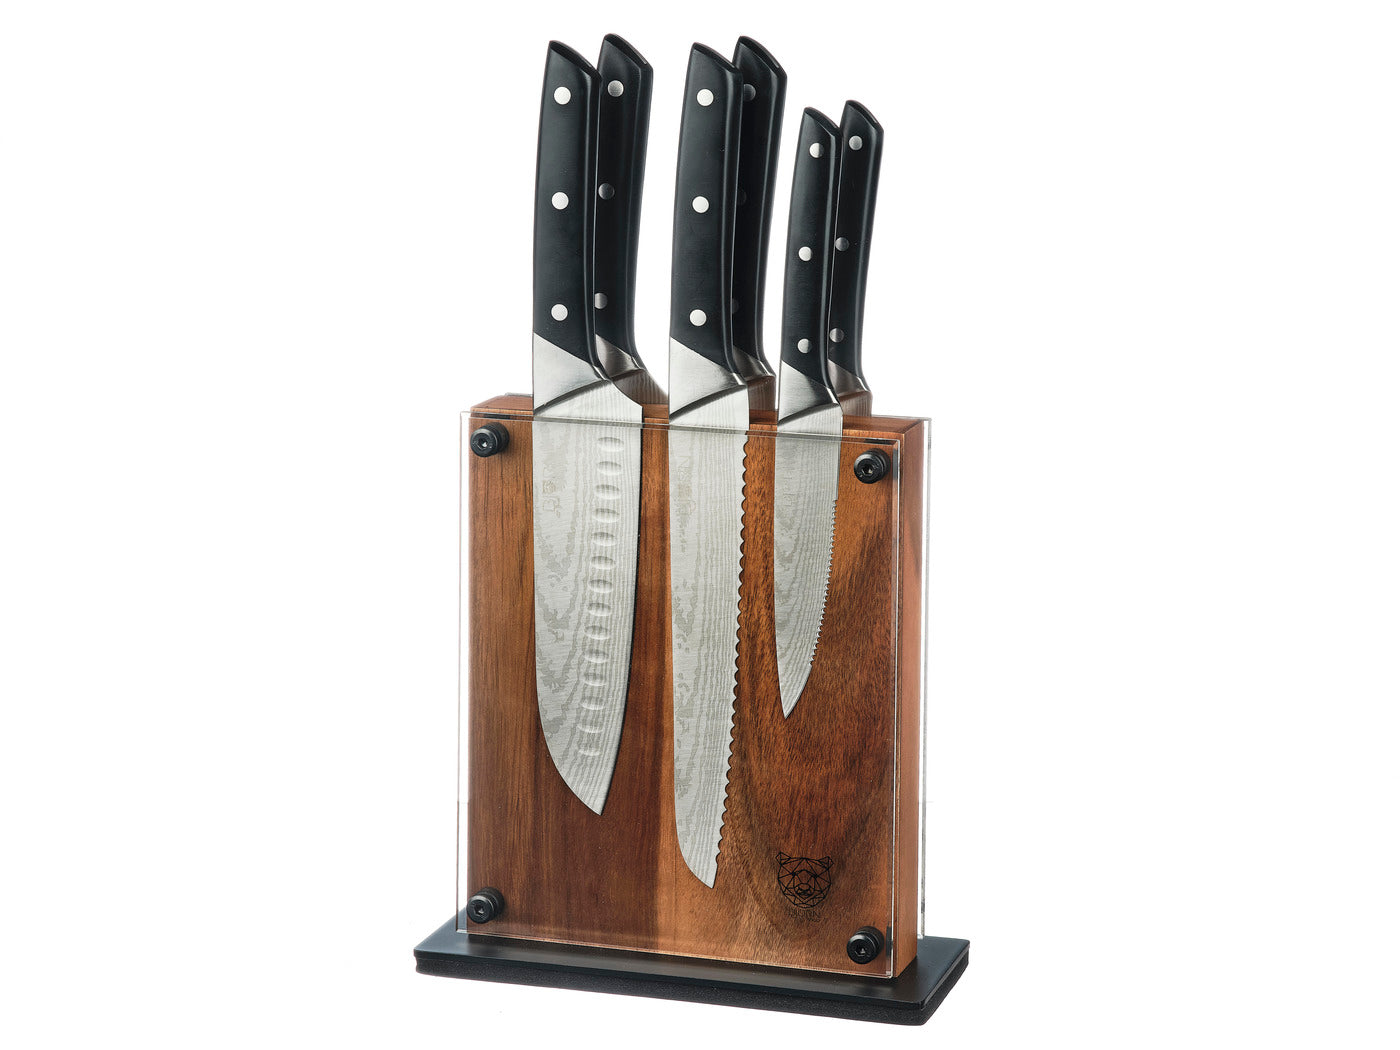 Couteaux de cuisine ERLING - 6 pièces